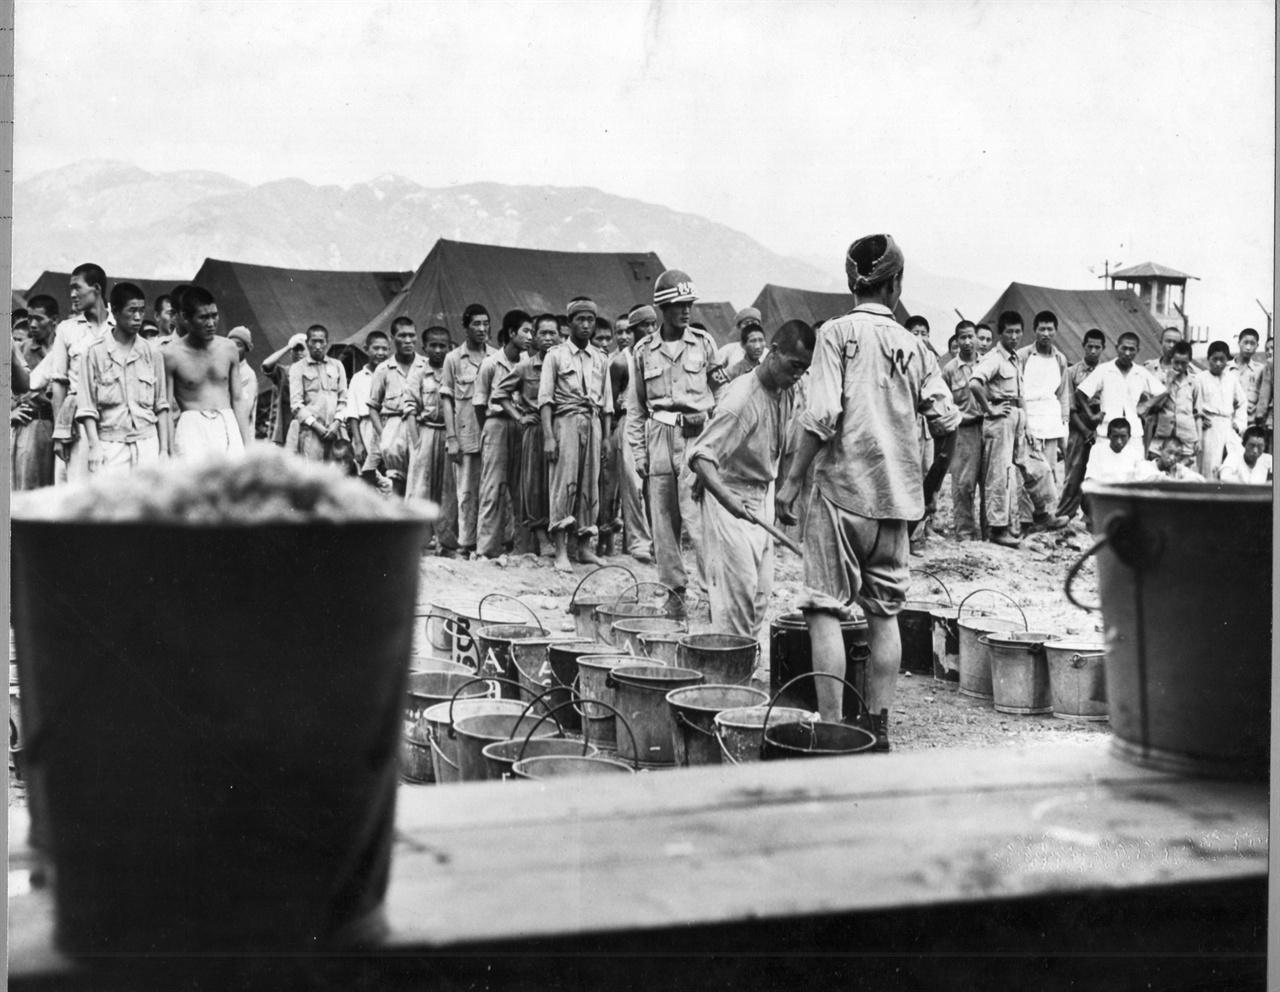  1951. 9. 부산. 포로수용소에서 식사시간 포로(P. W) 취사병이 동료들에게 배식을 하고 있다.